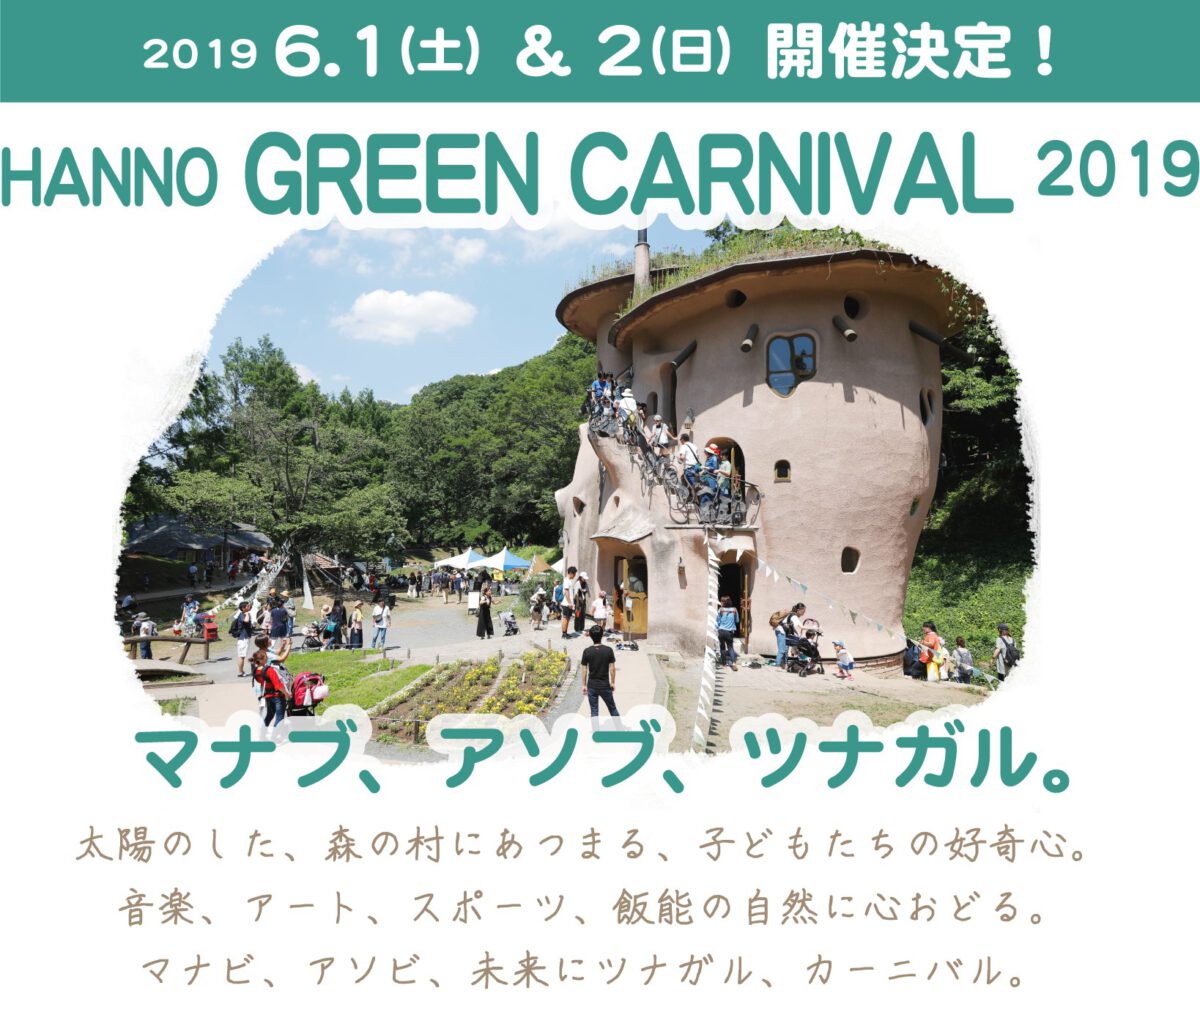 今年も開催！「Hanno Green Carnival 2019 ～マナブ、アソブ、ツナガル～」に「メッツァ」がコラボ会場になります！